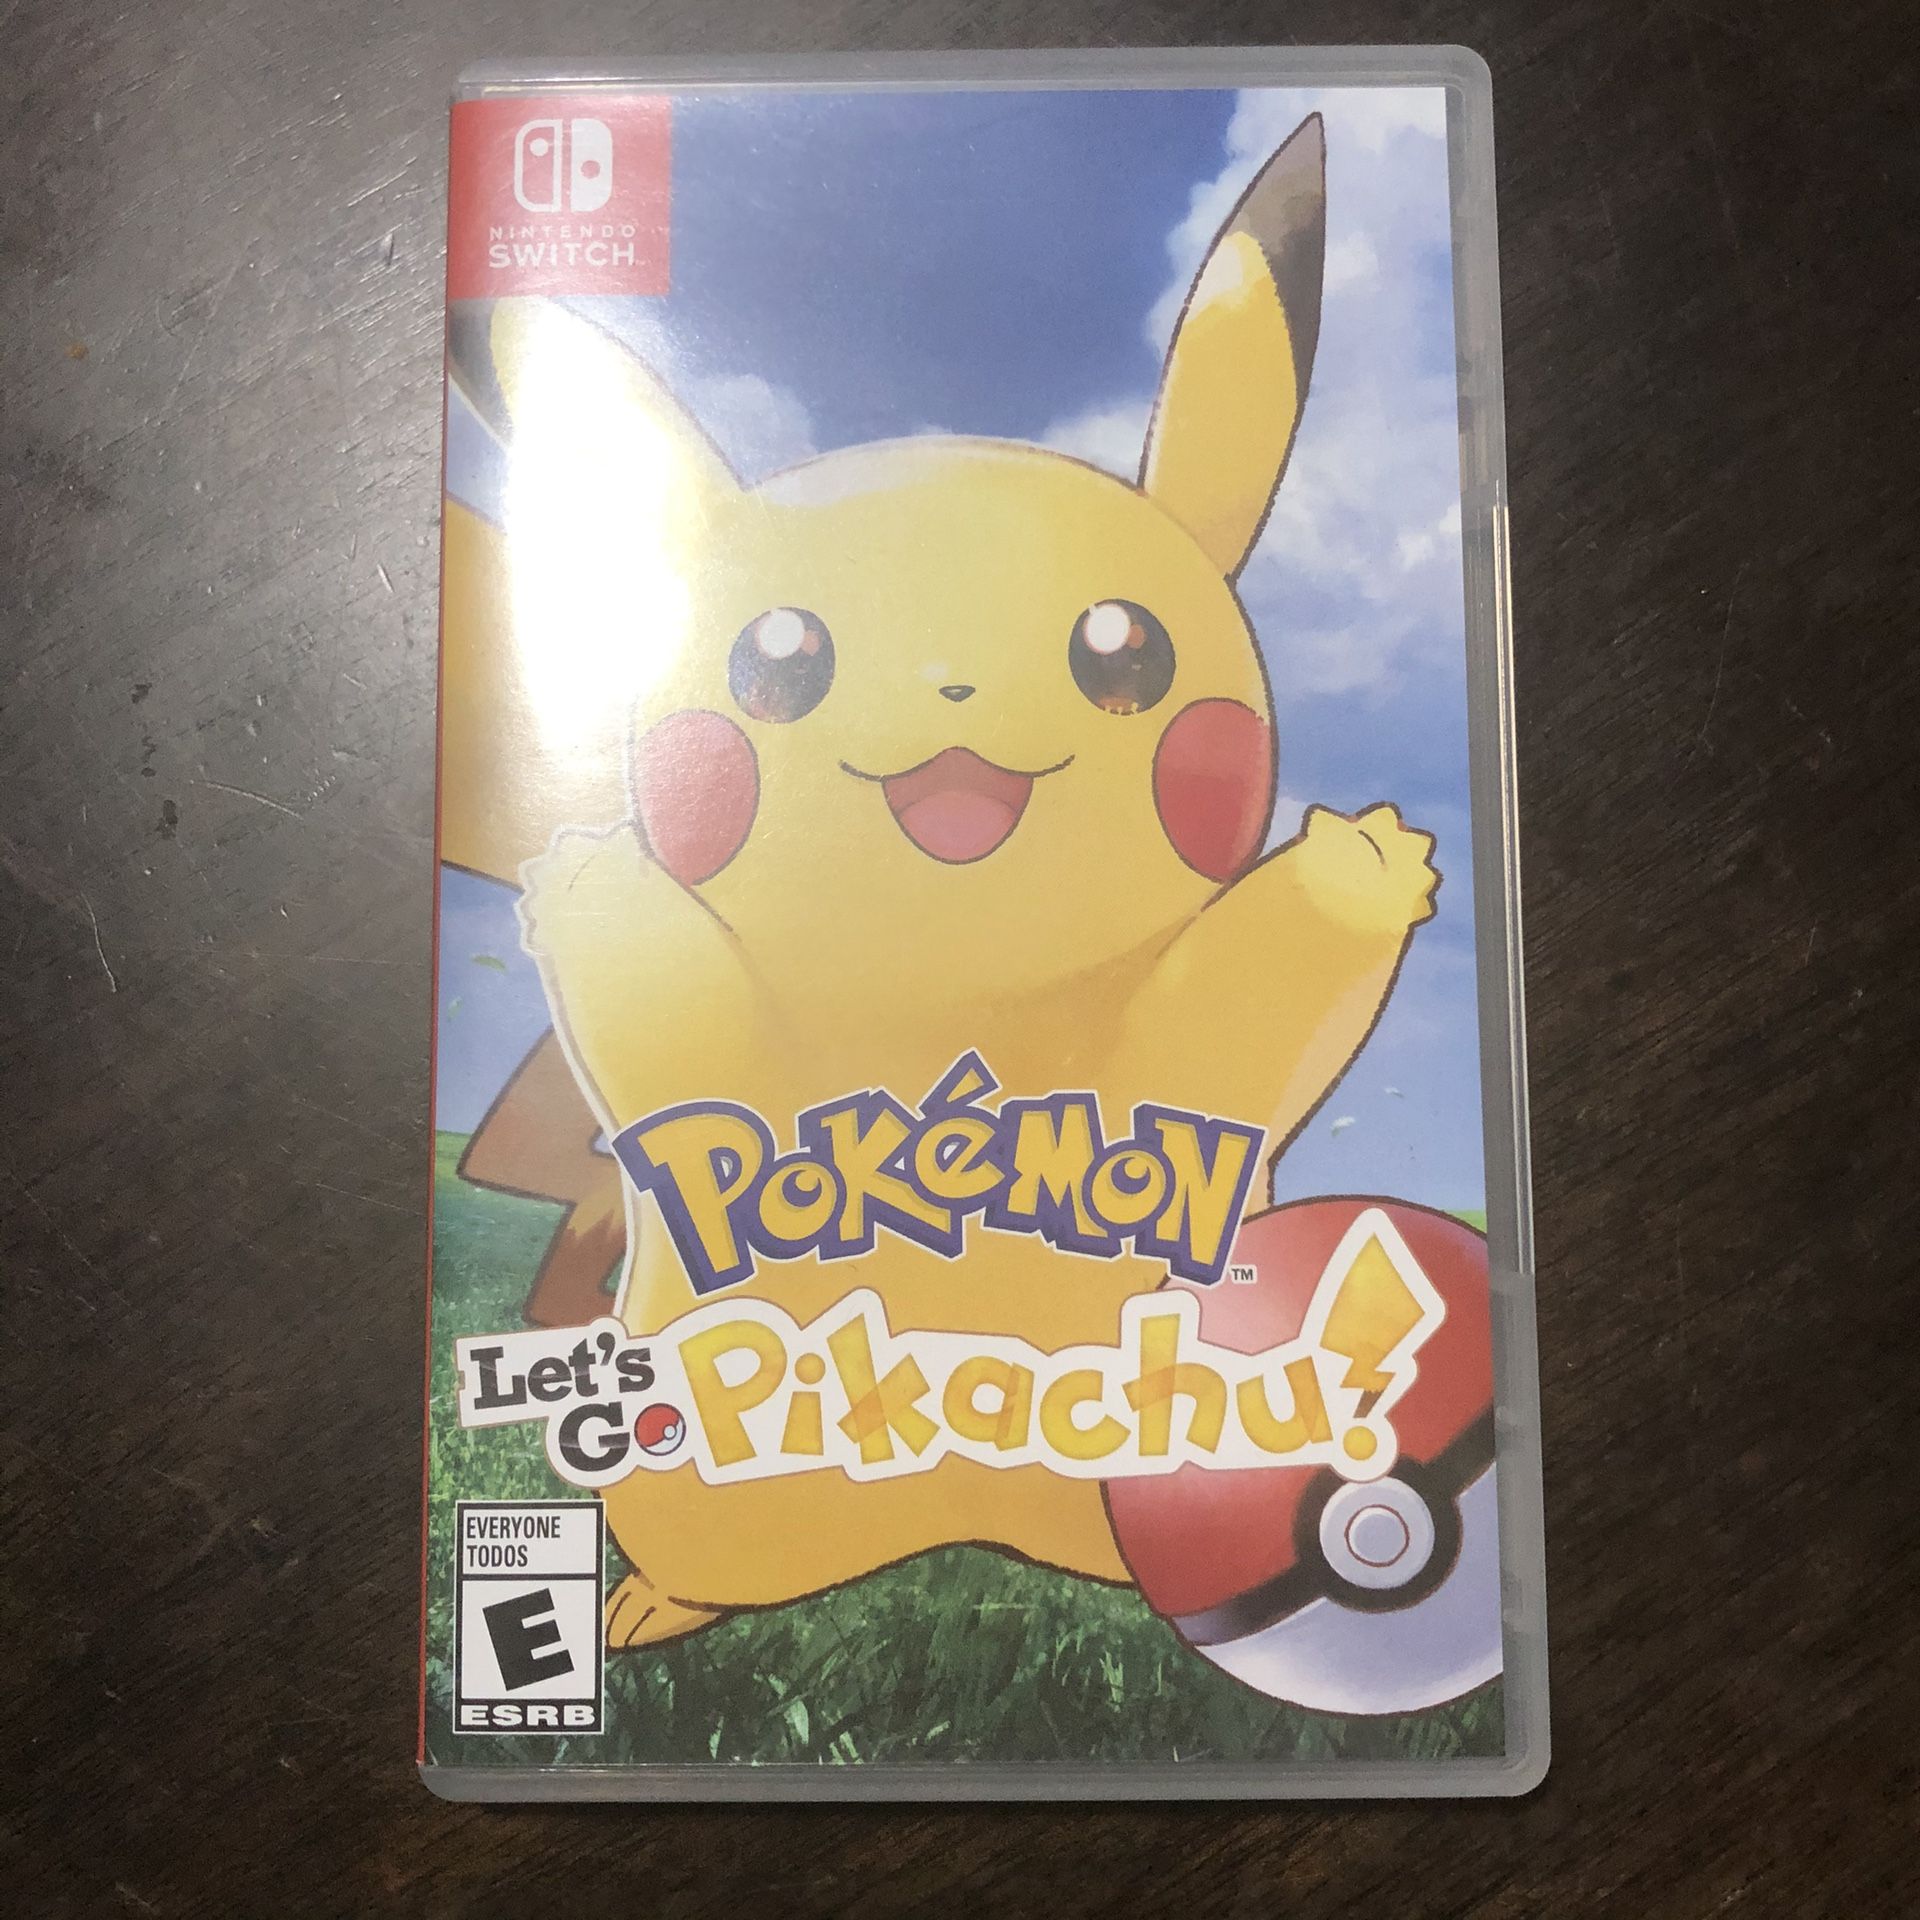 Pokemon: Let’s Go Pikachu!